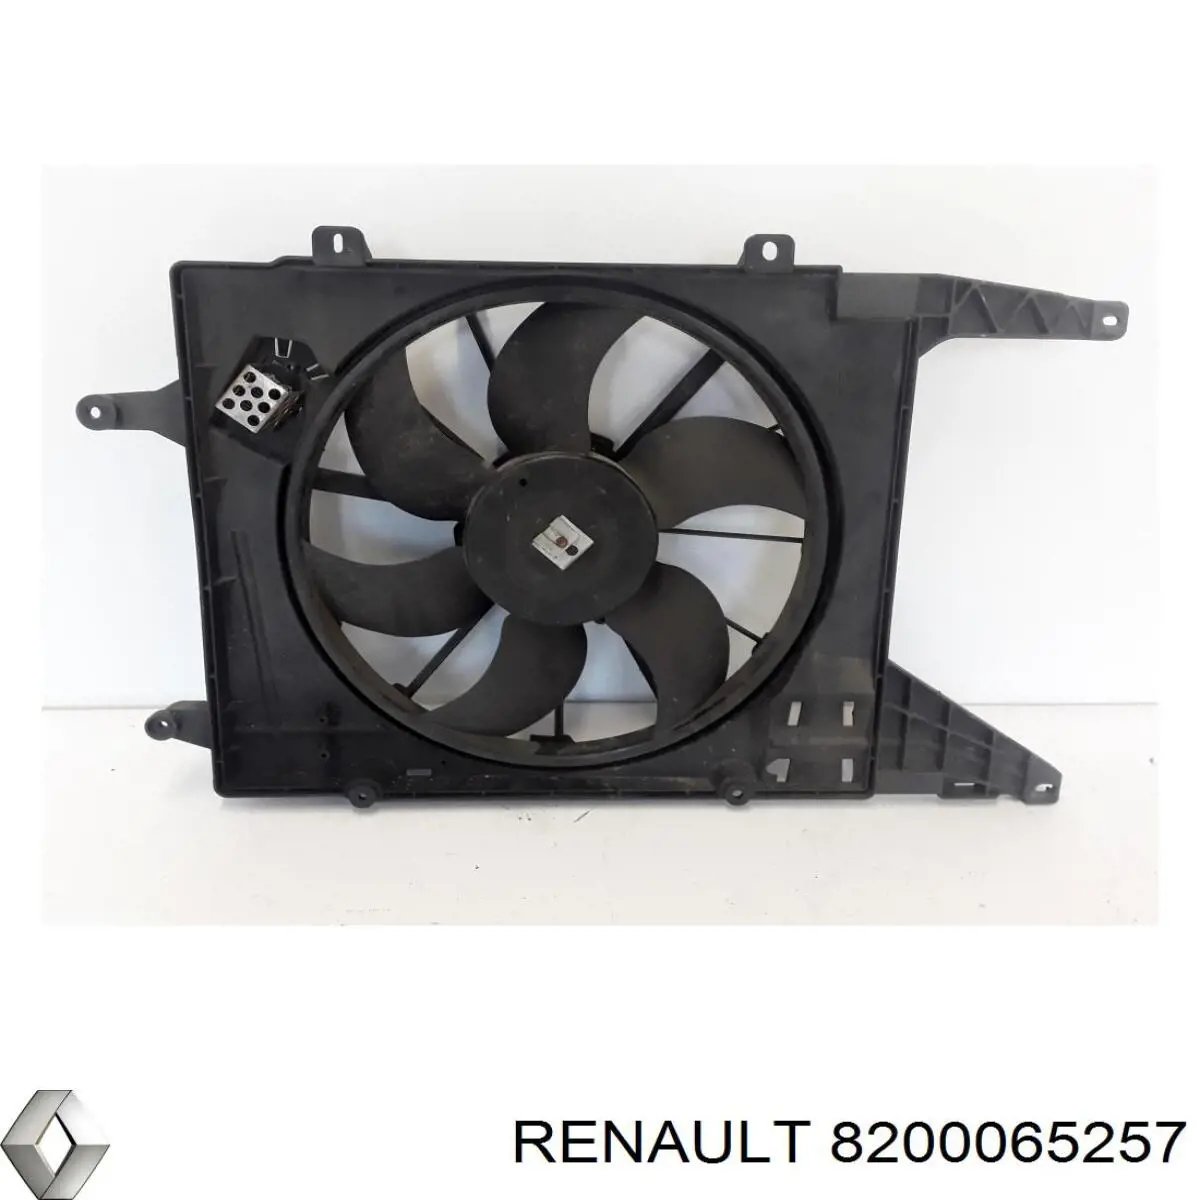 Difusor de radiador, ventilador de refrigeración, condensador del aire acondicionado, completo con motor y rodete para Renault Scenic (JA0)